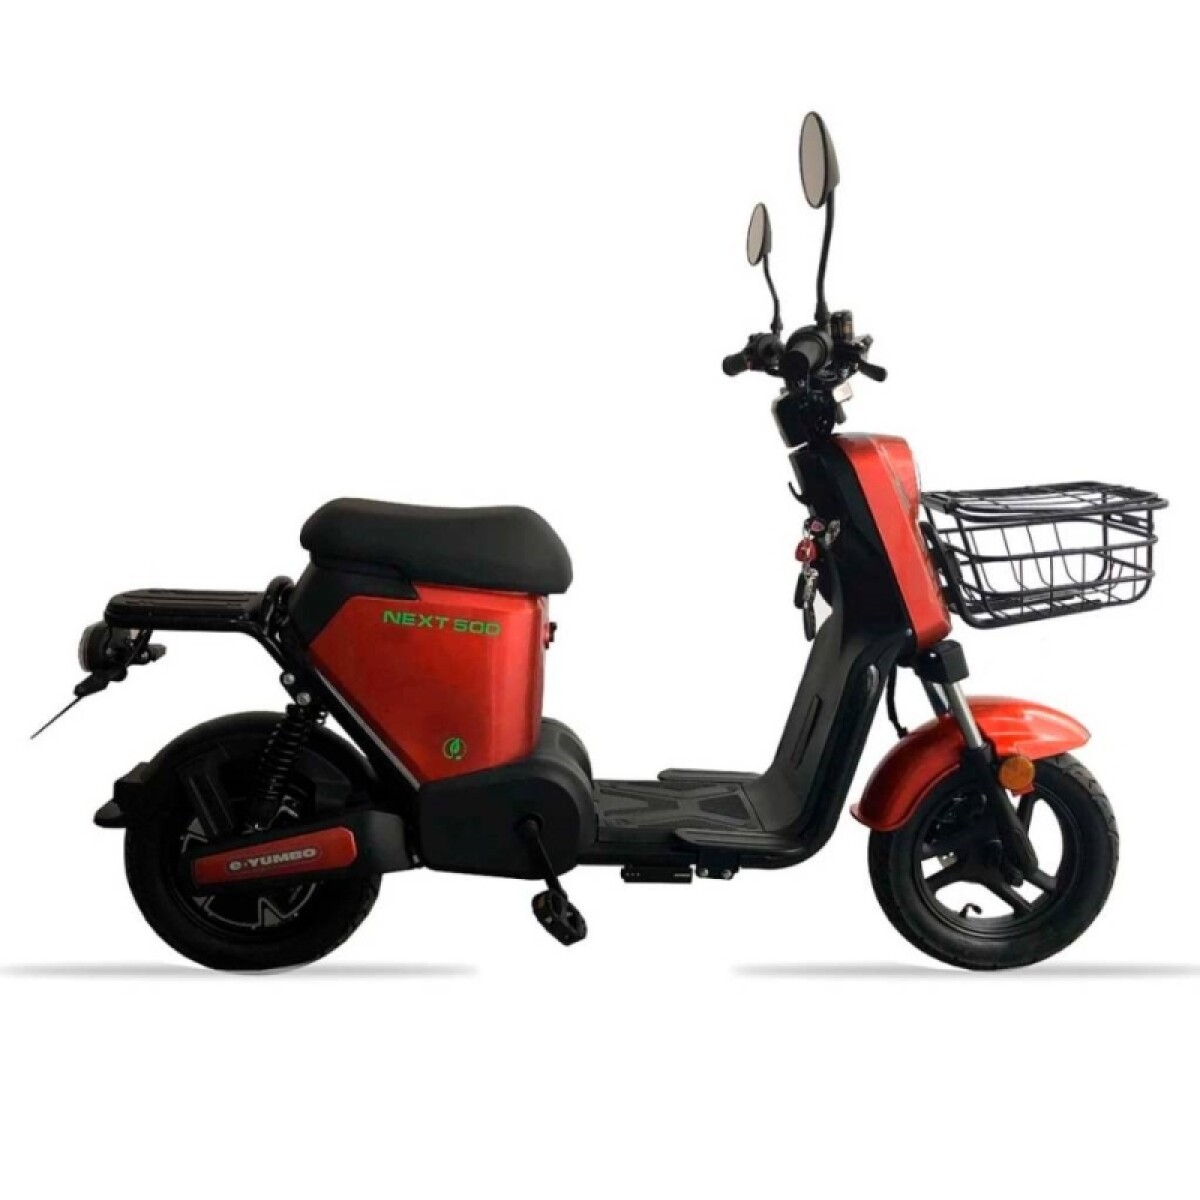 Moto Electrica E-yumbo Next 500 - Rojo 